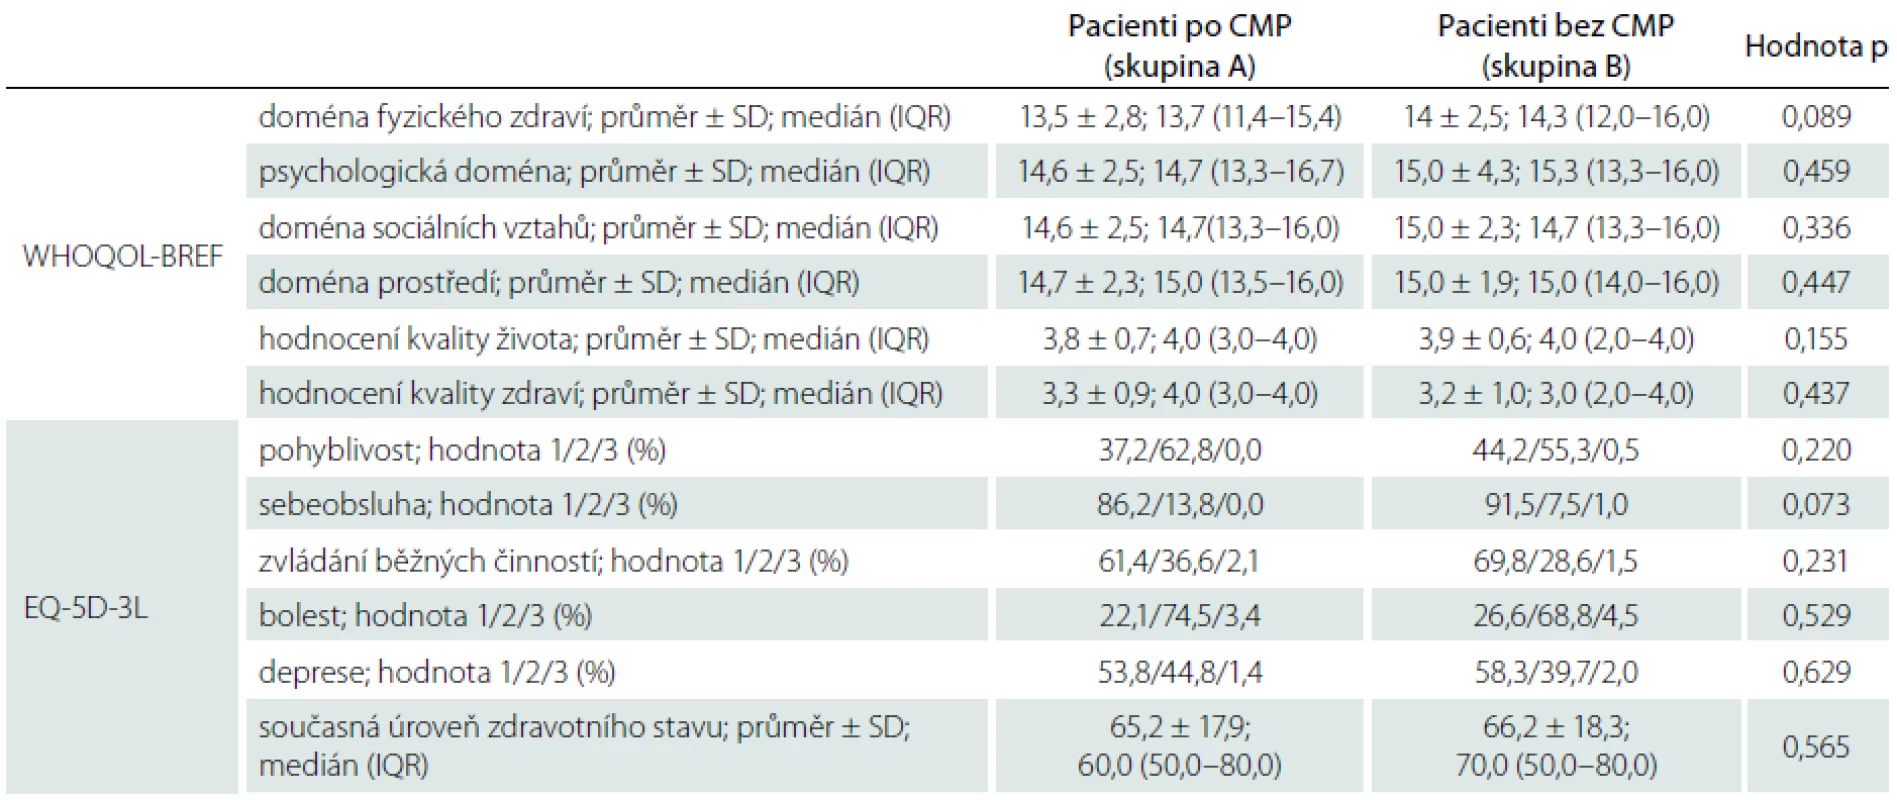 Výsledky hodnocení kvality života u pacientů po neinvalidizující CMP a pacientů bez anamnézy CMP.